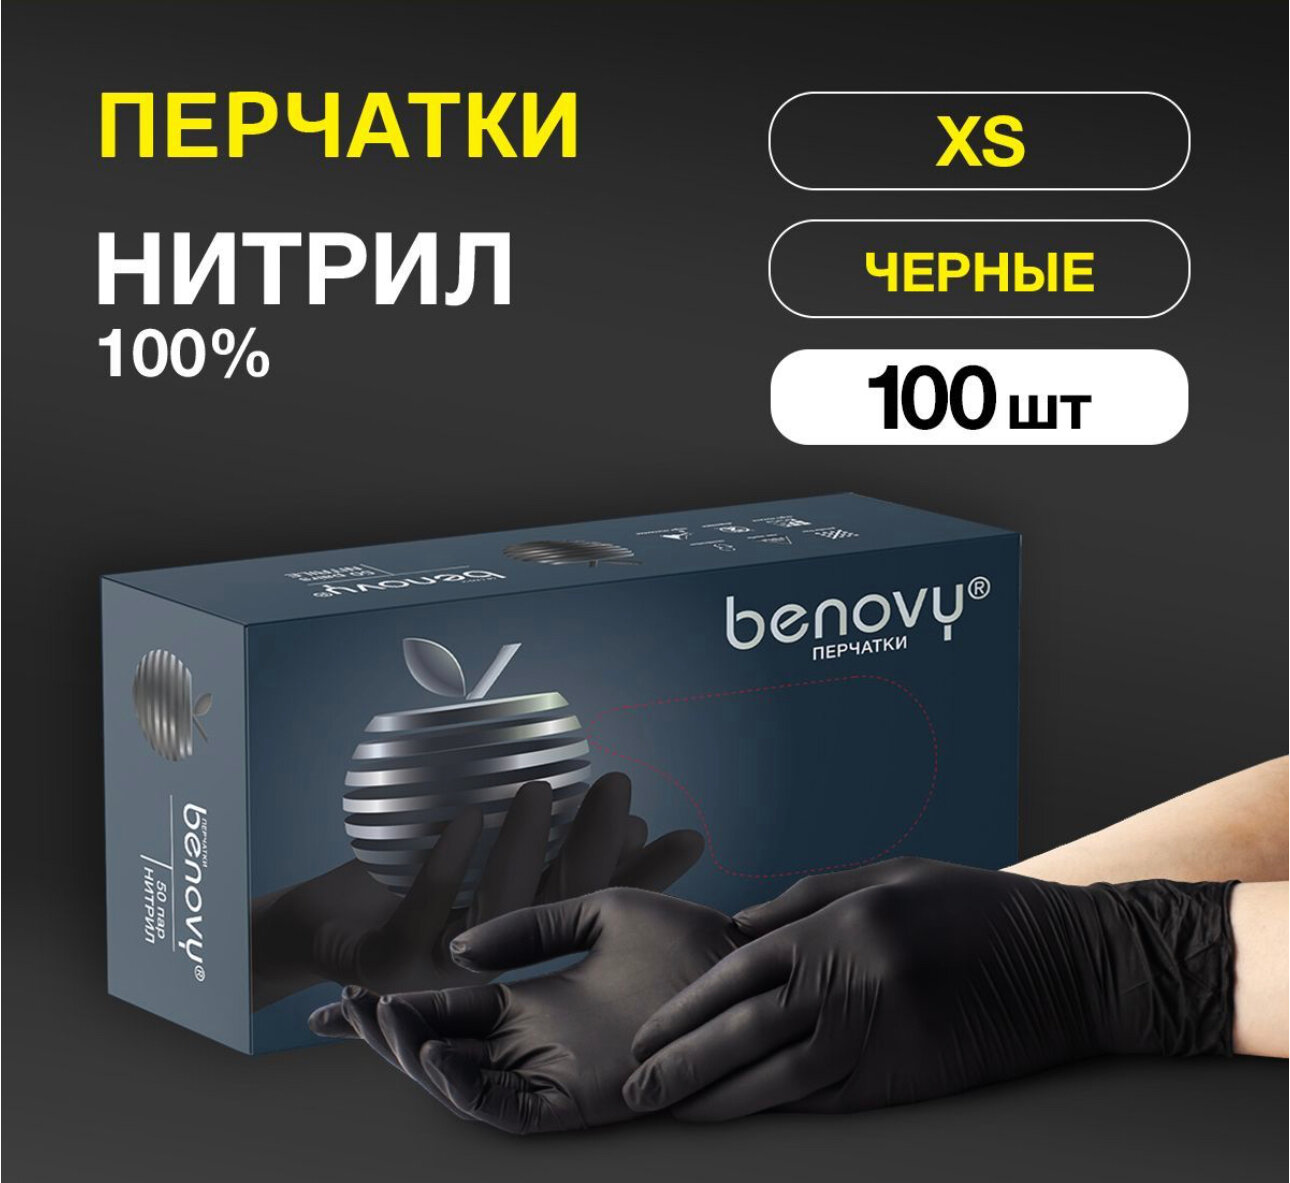 Перчатки медицинские Benovy 100 шт (50 пар), размер XS, нитриловые, цвет черный, 1уп.